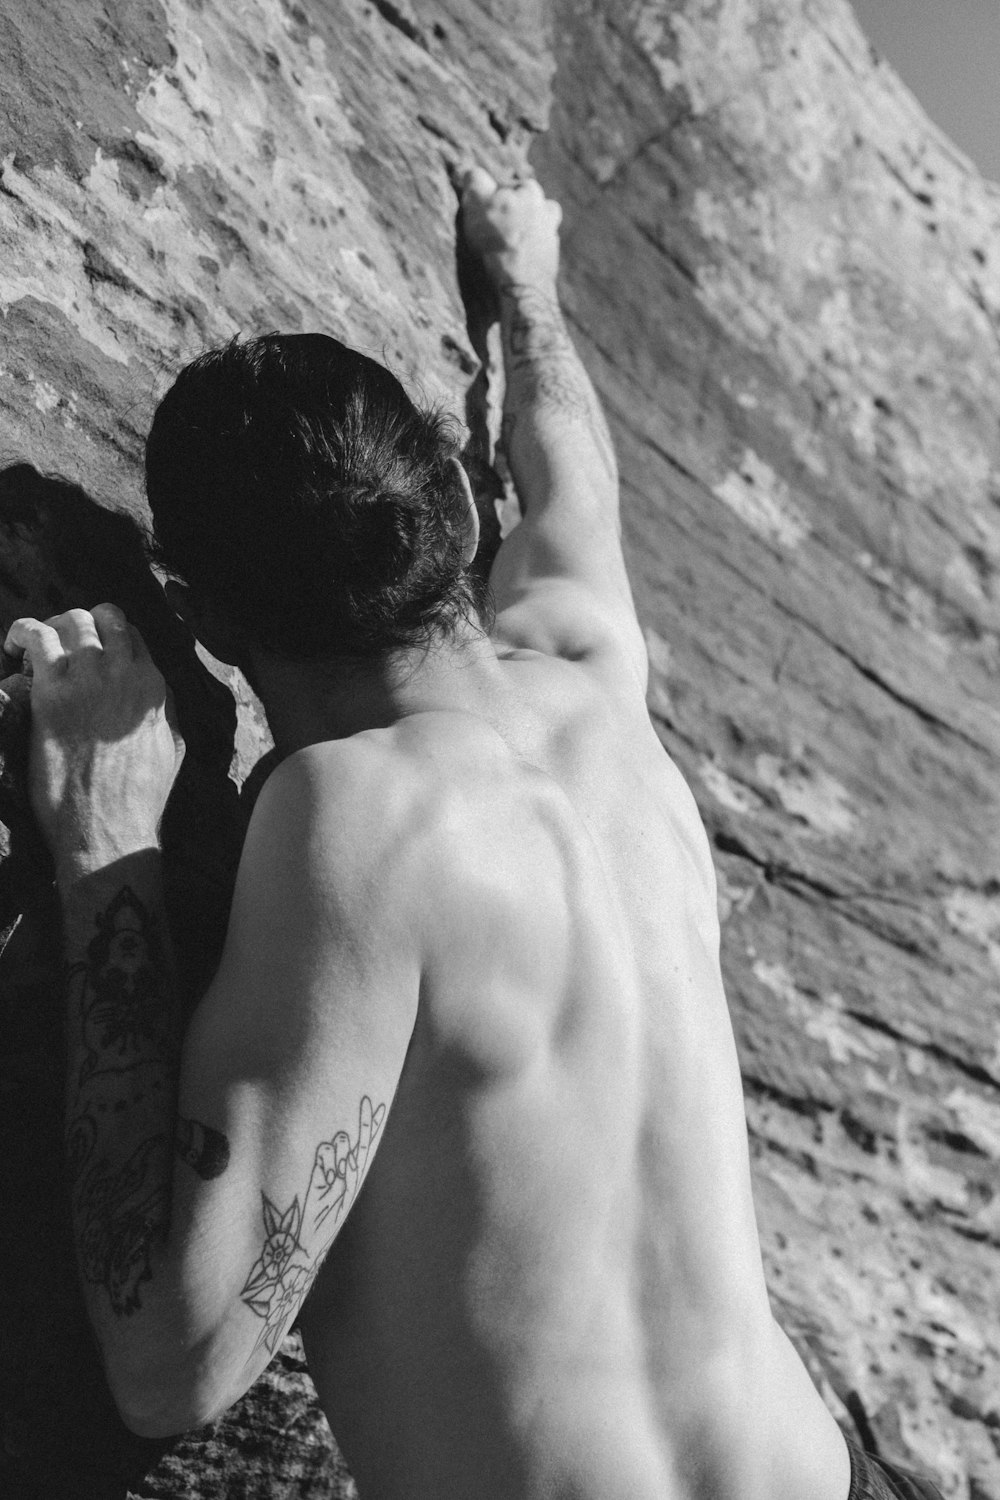 foto em tons de cinza do homem de topless com tatuagem nas costas